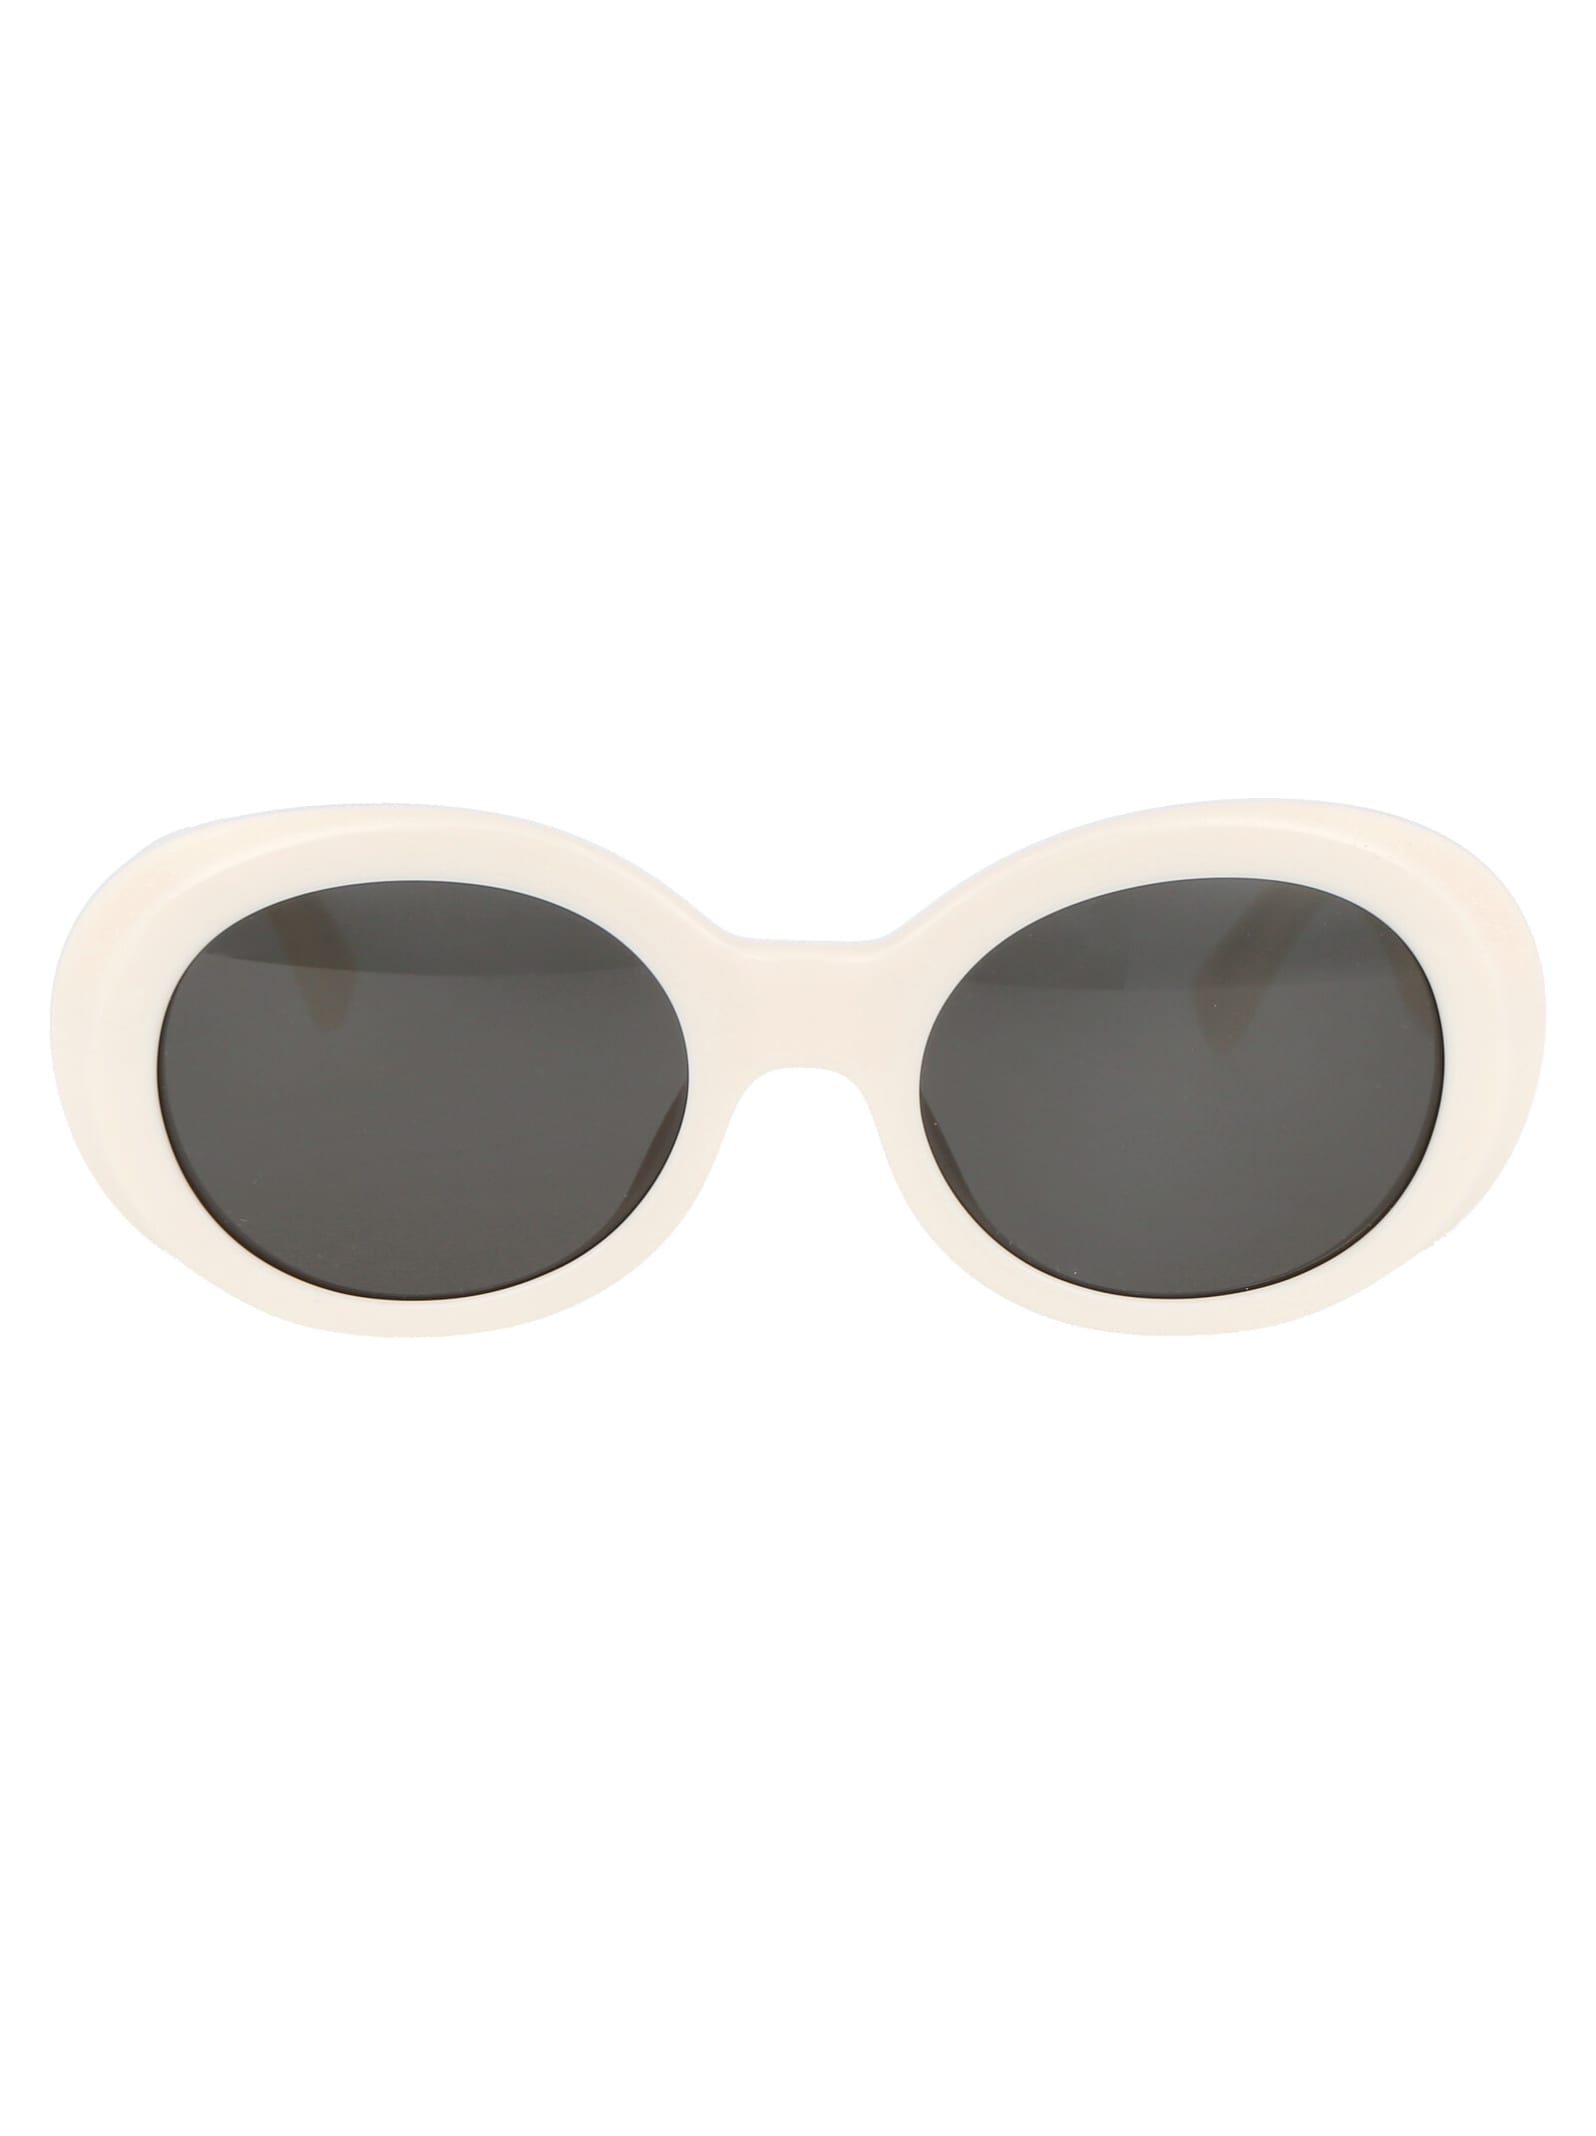 Shop Ambush Kurt Sunglasses In 0107 White